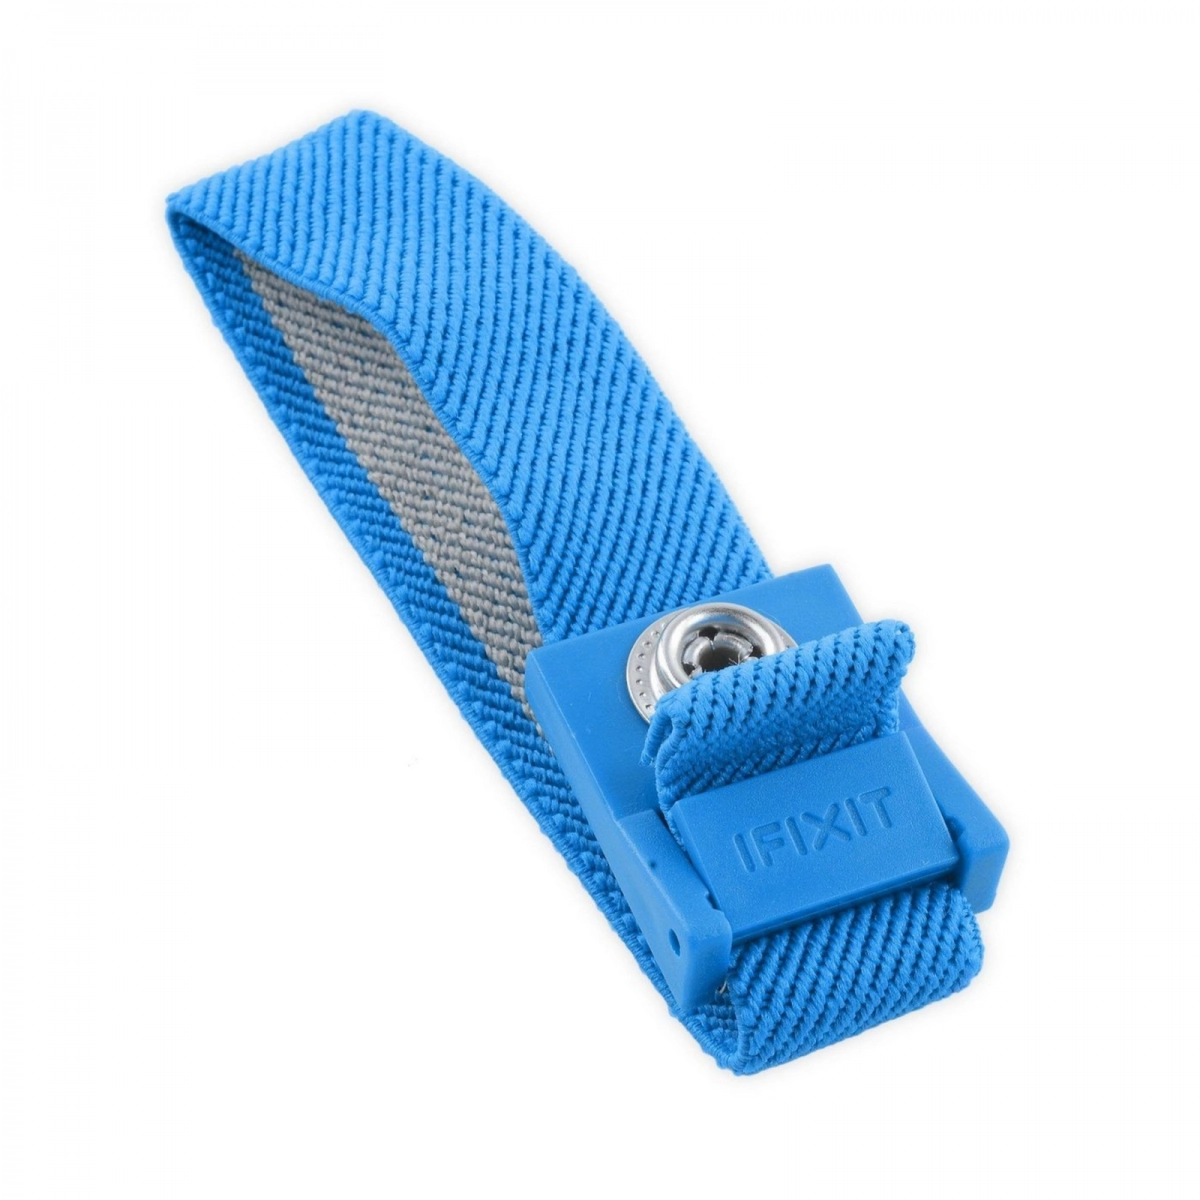 iFixit Anti-Static Wrist Strap, Antistatik-Armband zum Schutz empfindlicher Elektronik vor statischer Entladung (EU145071-1)